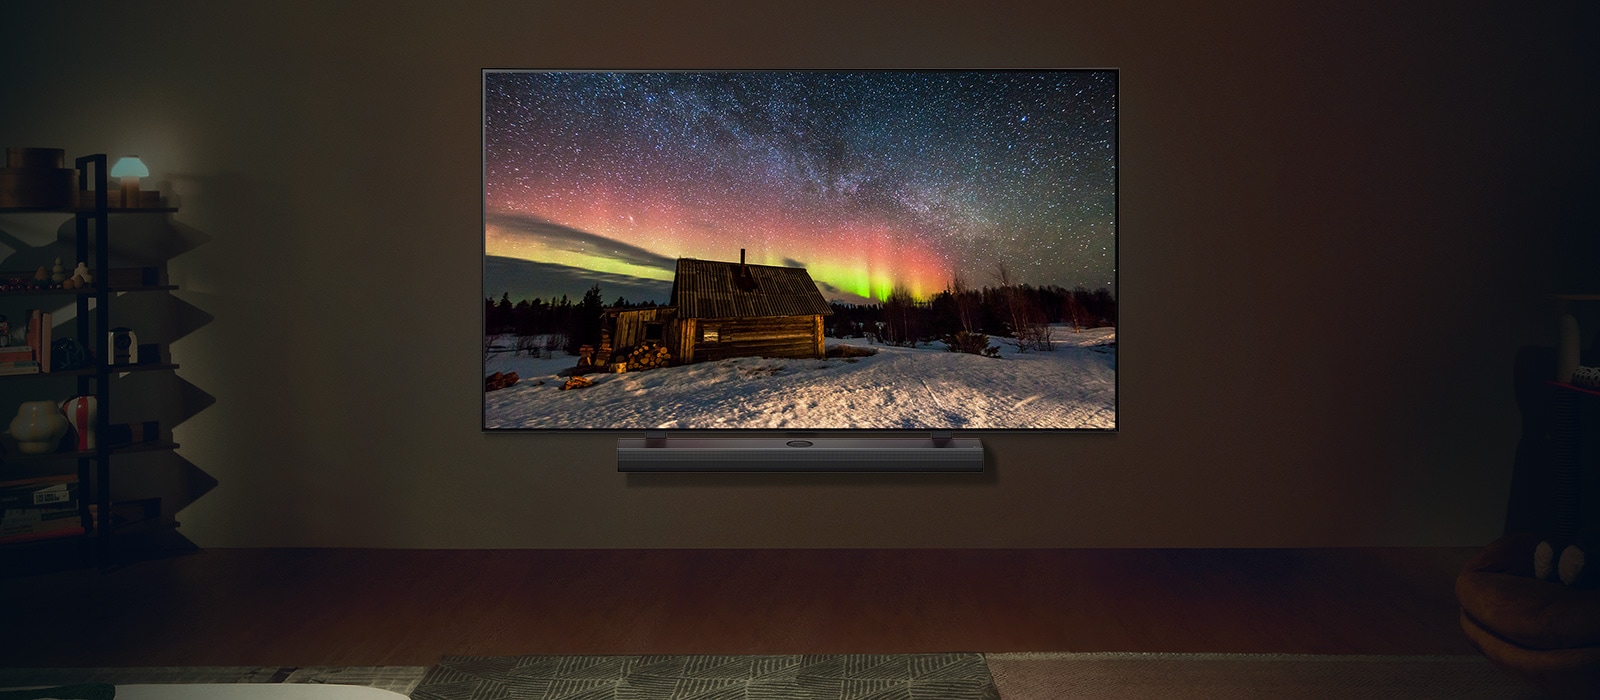 LG TV e LG Soundbar num espaço habitacional moderno durante a noite. A imagem do ecrã da aurora boreal é exibida com os níveis de brilho ideais.